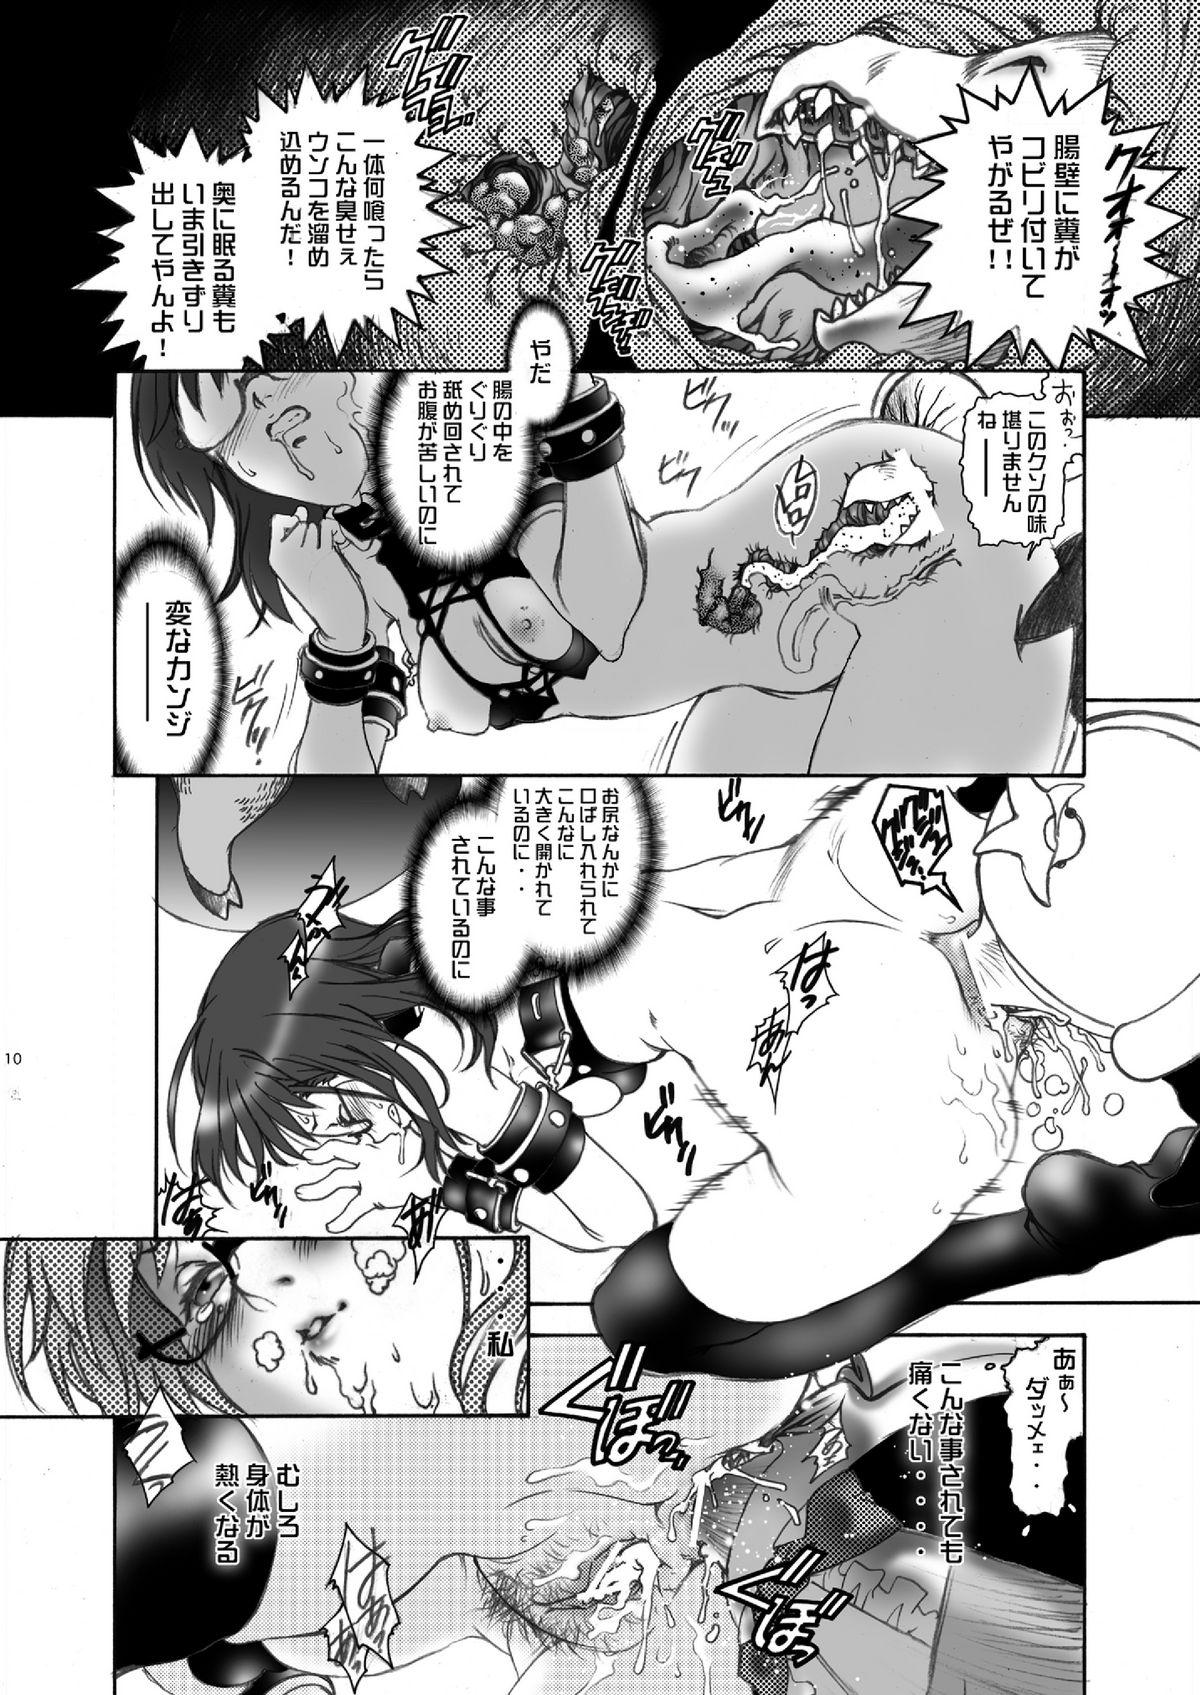 Piss Ittemasuyo! Saku-chan. - Yondemasuyo azazel san Amazing - Page 10